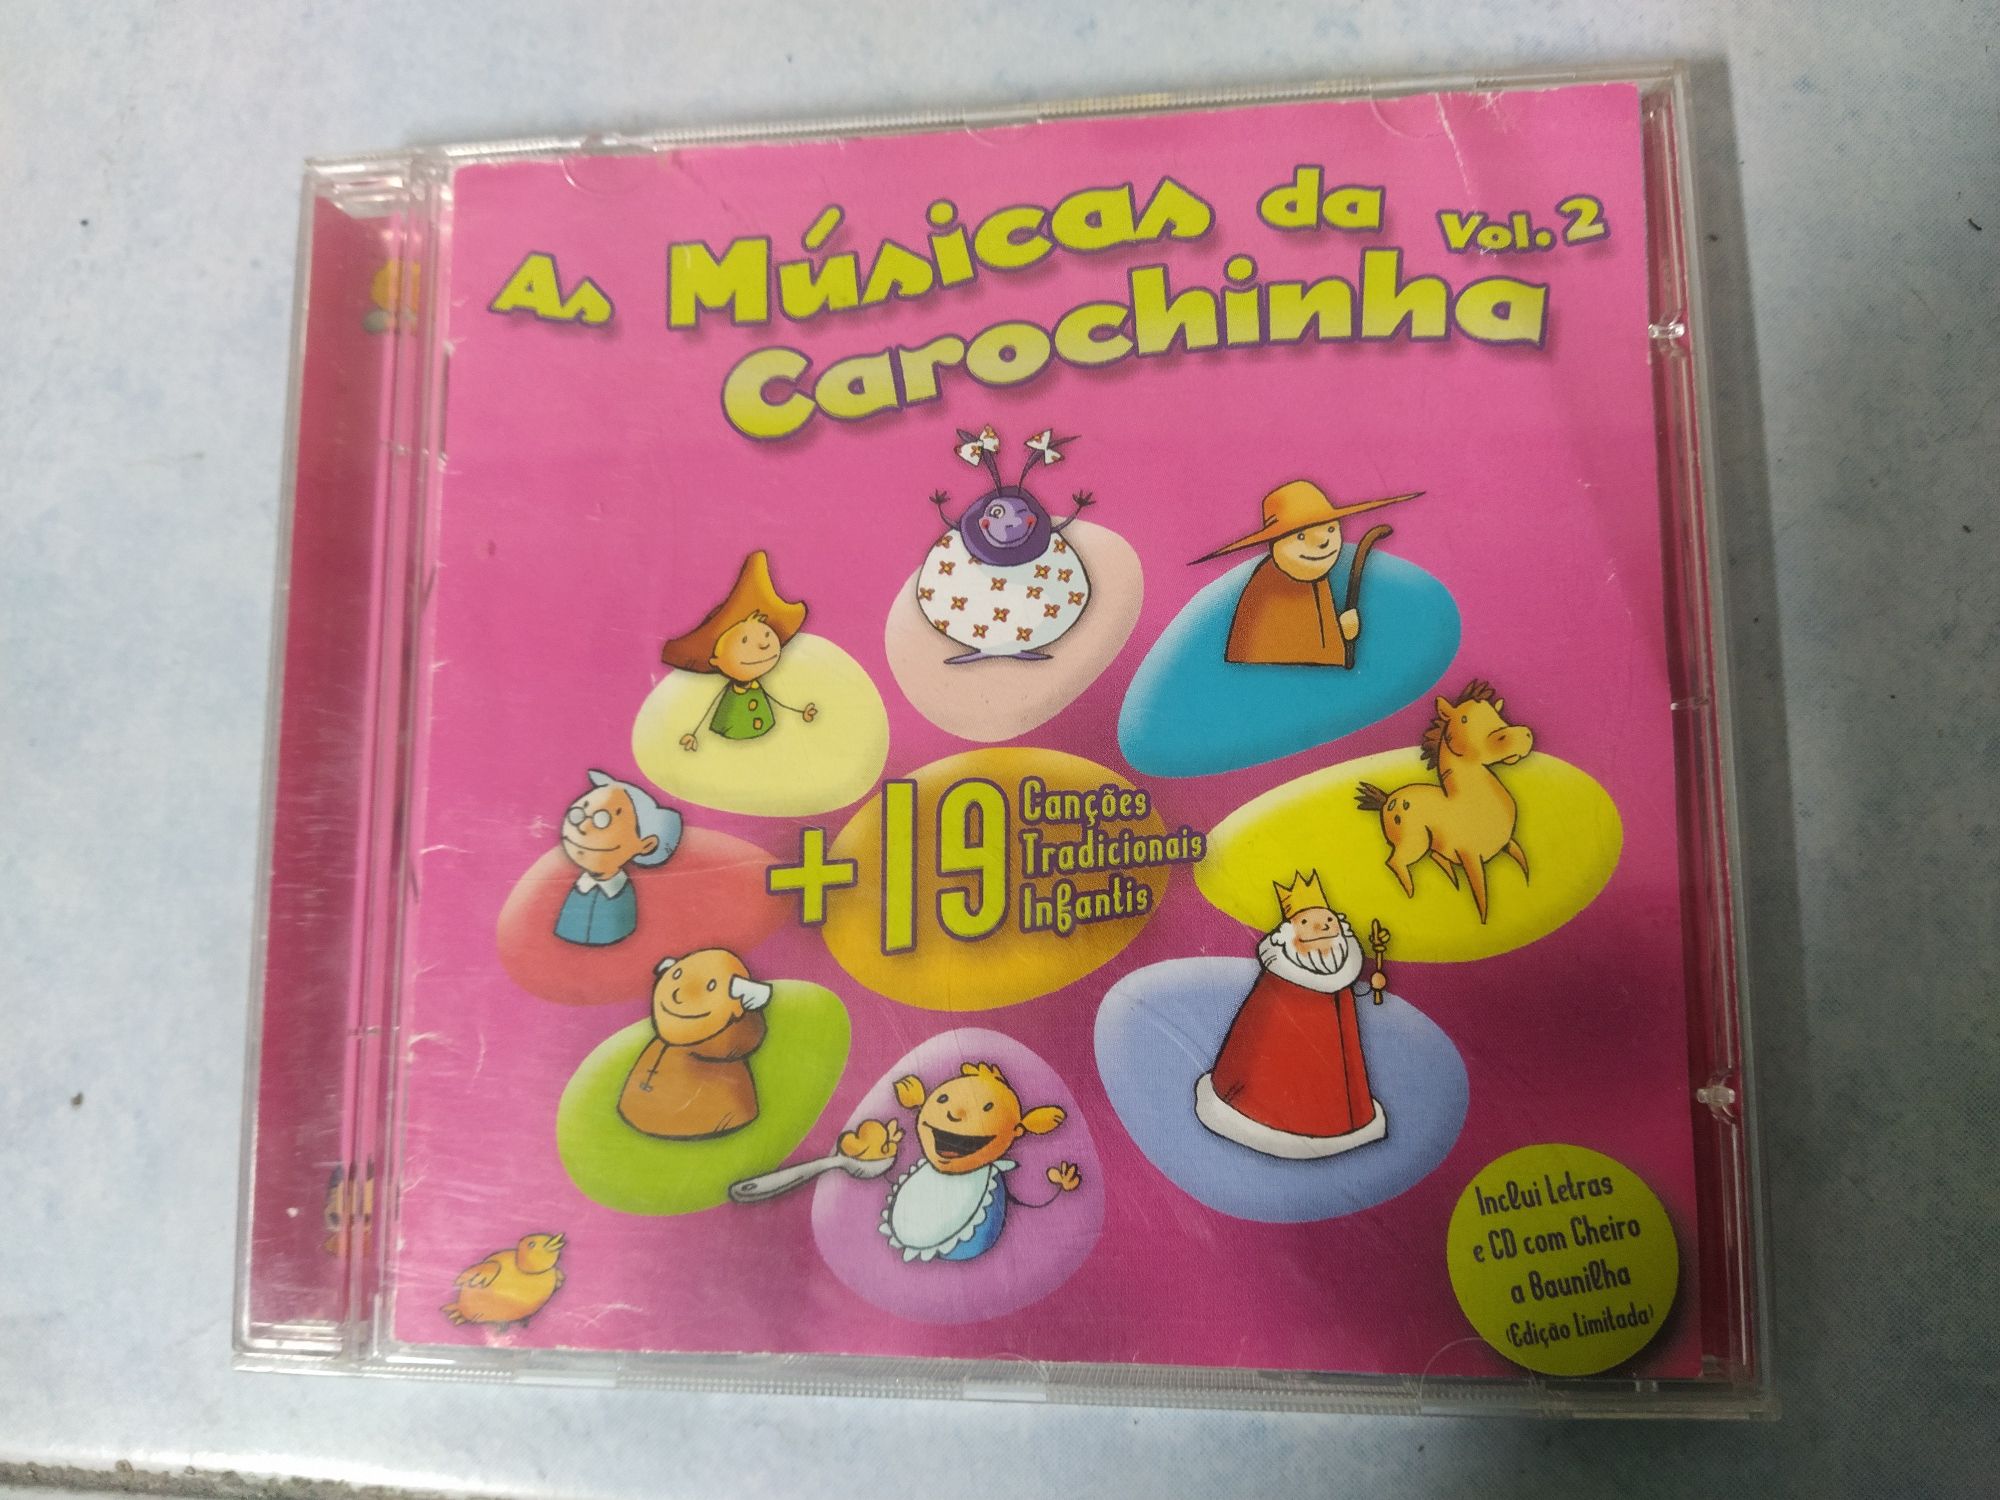 Conjunto 3CD's: 2 das "Músicas da Carochinha" e 1 "Os Pintainhos"